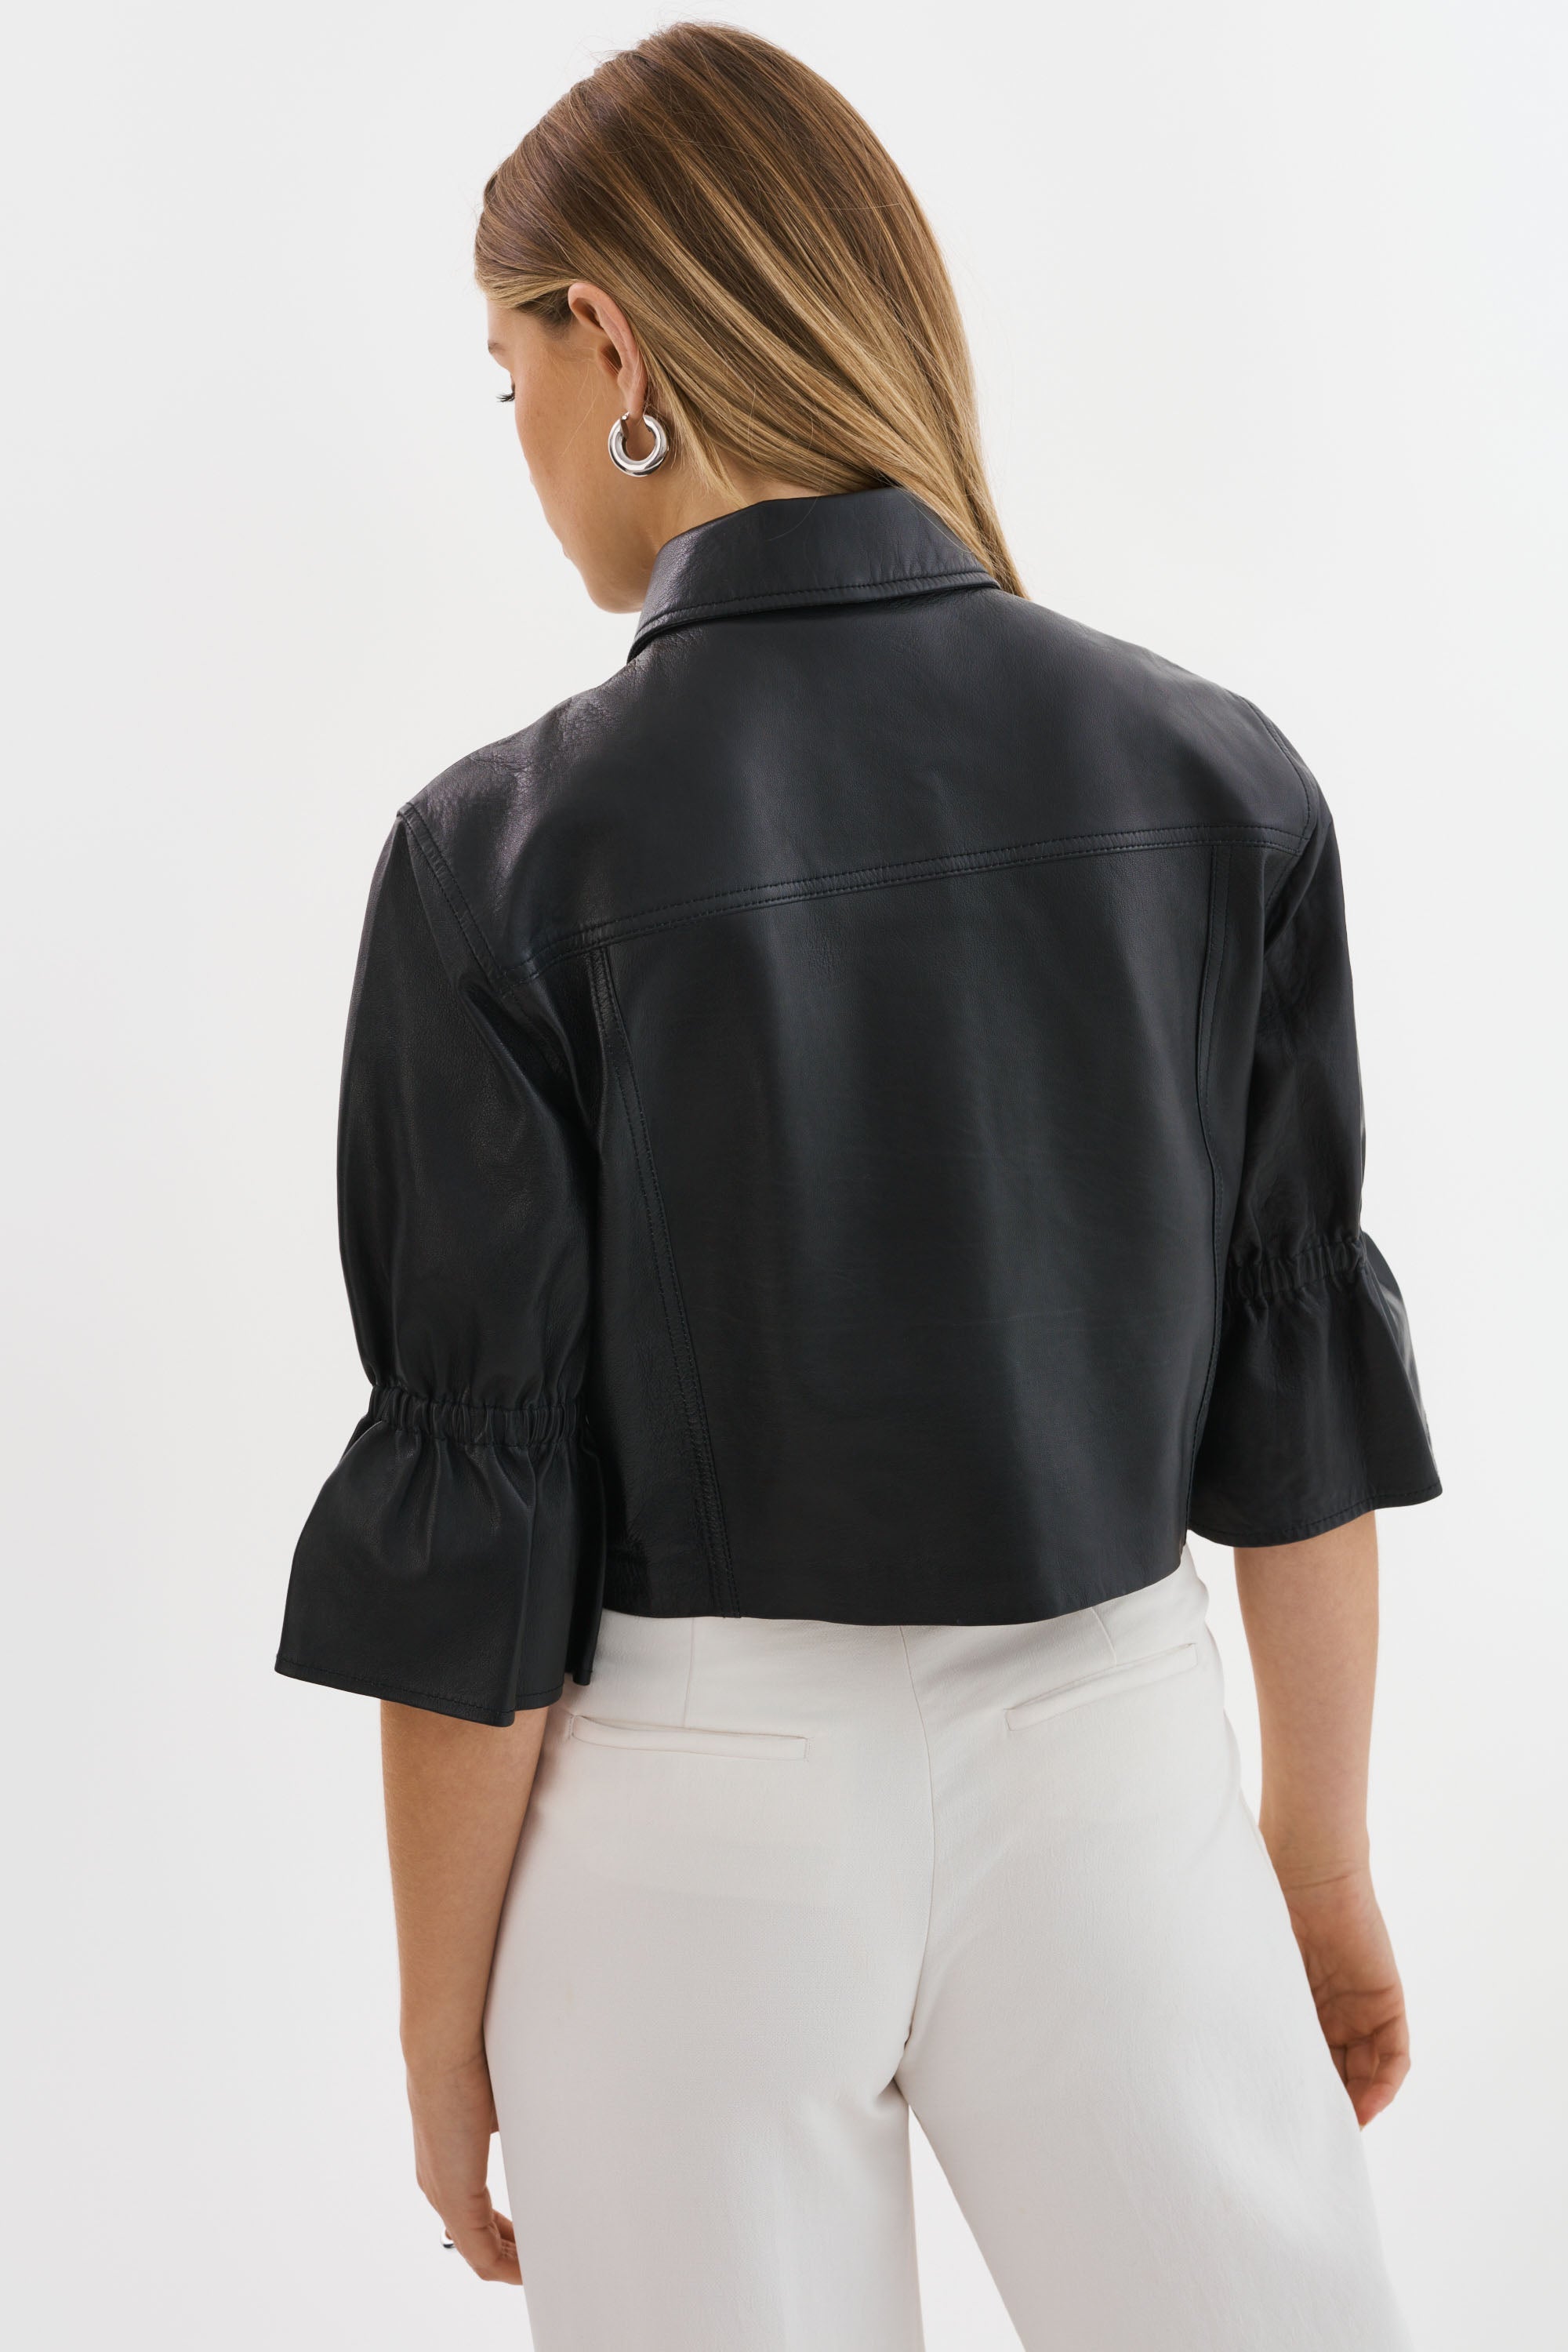 LEO BOUTIQUE Carolina Leather Ruffle Sleeve Jacket Black LAMARQUE